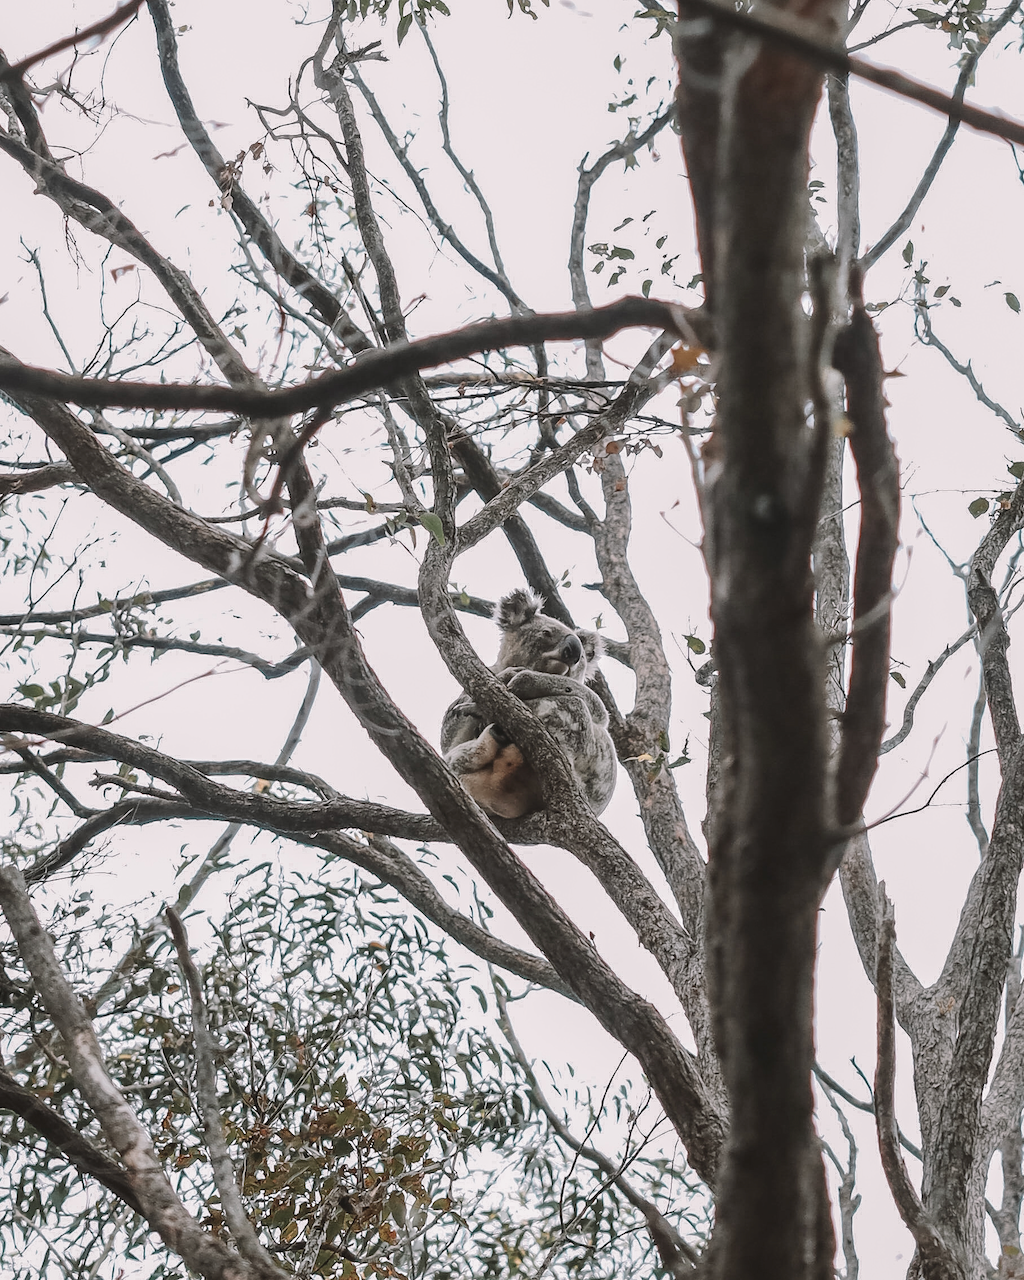 Un koala curieux en haut d'un arbre - Distillerie de Cape Byron - Byron Bay - New South Wales - Australie